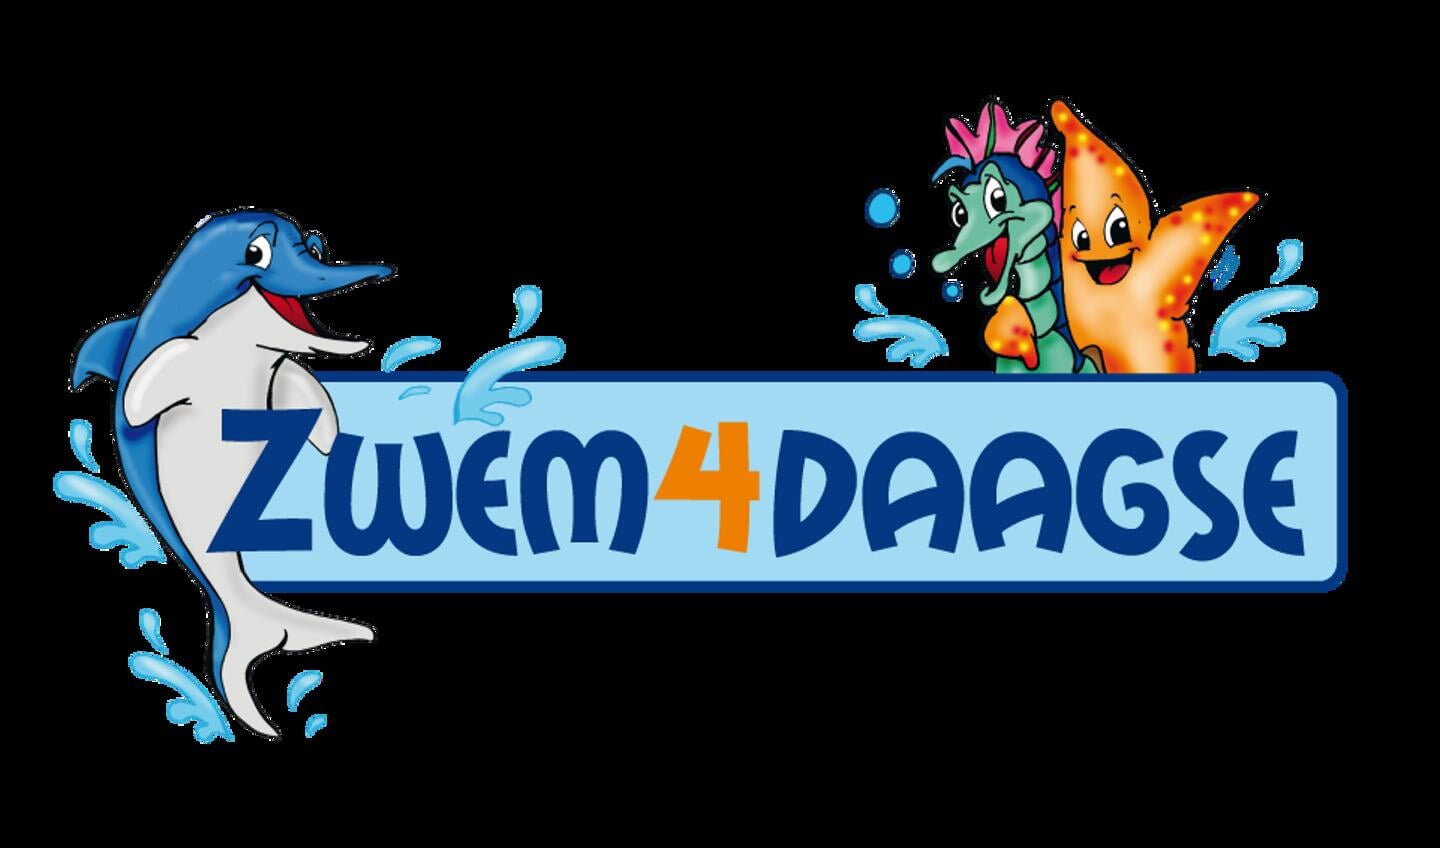 Het logo van de Zwem4daagse.